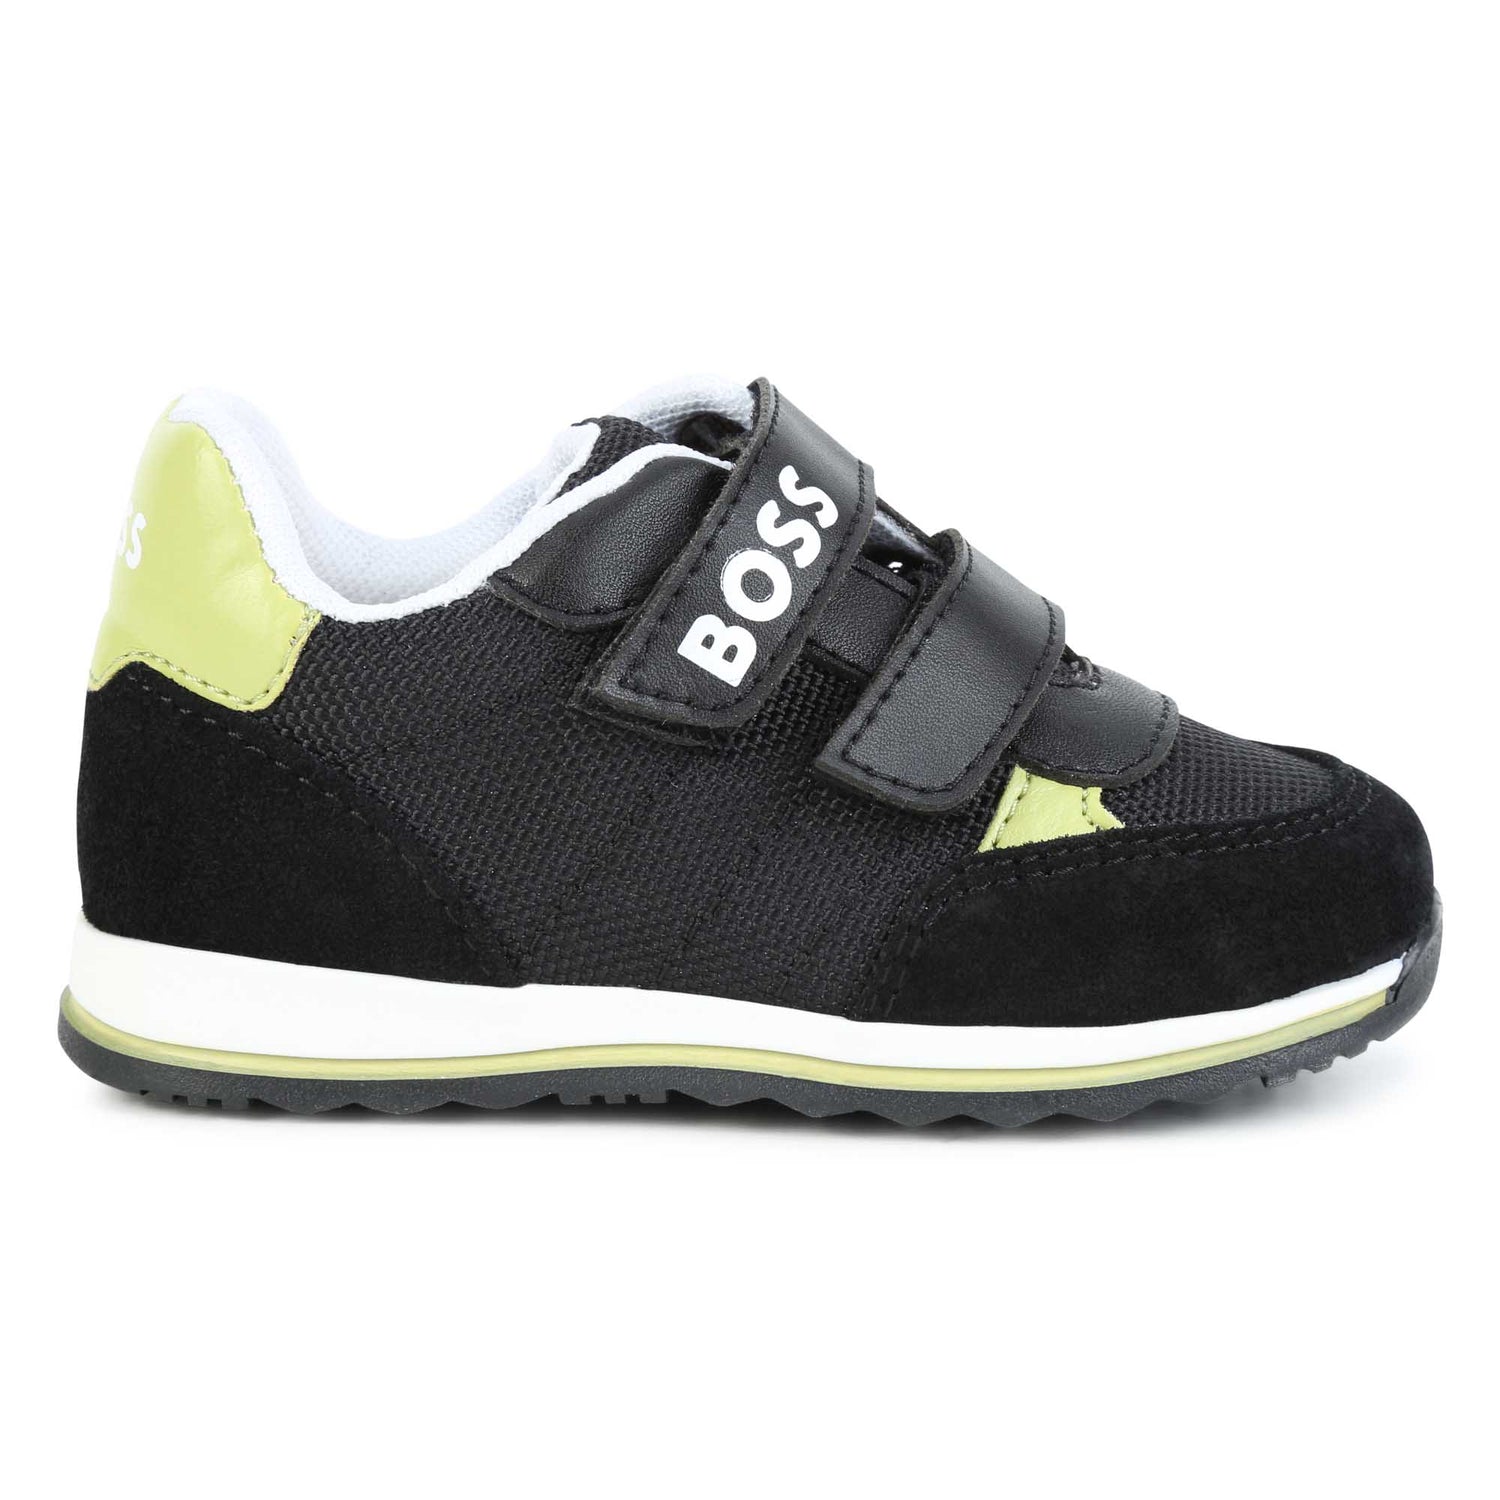 Refinement Uheldig squat Hugo Boss Black & Green Velcro Sneaker J09201 – Laced Shoe Inc